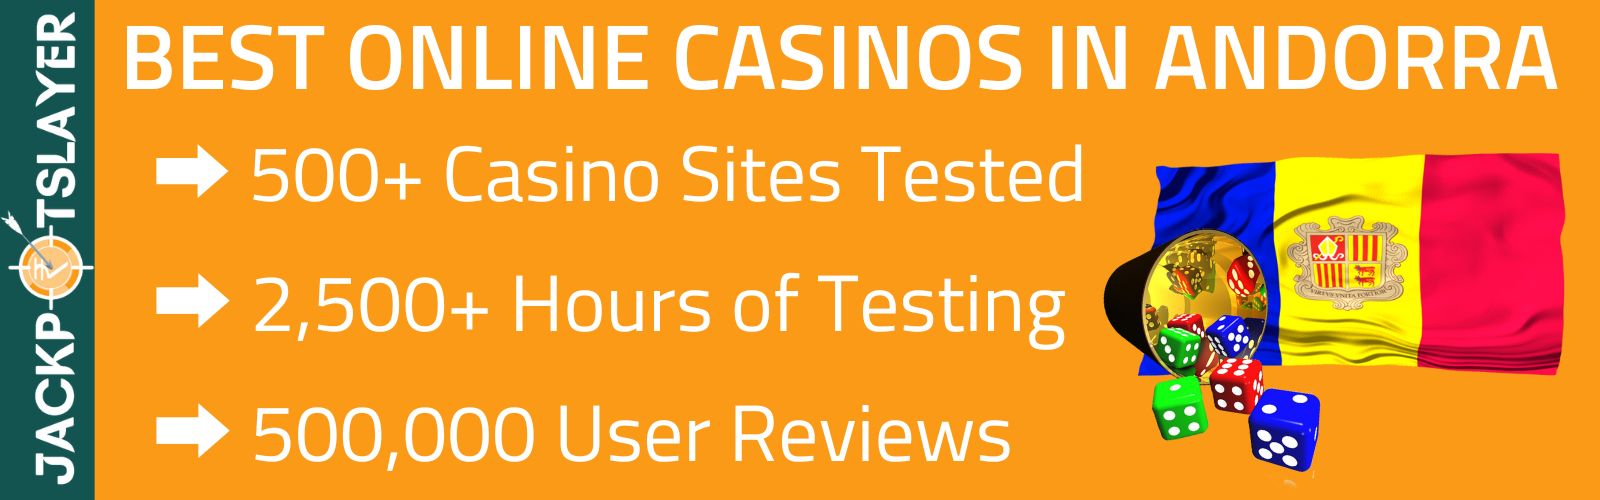 Best Online Casinos Andorra